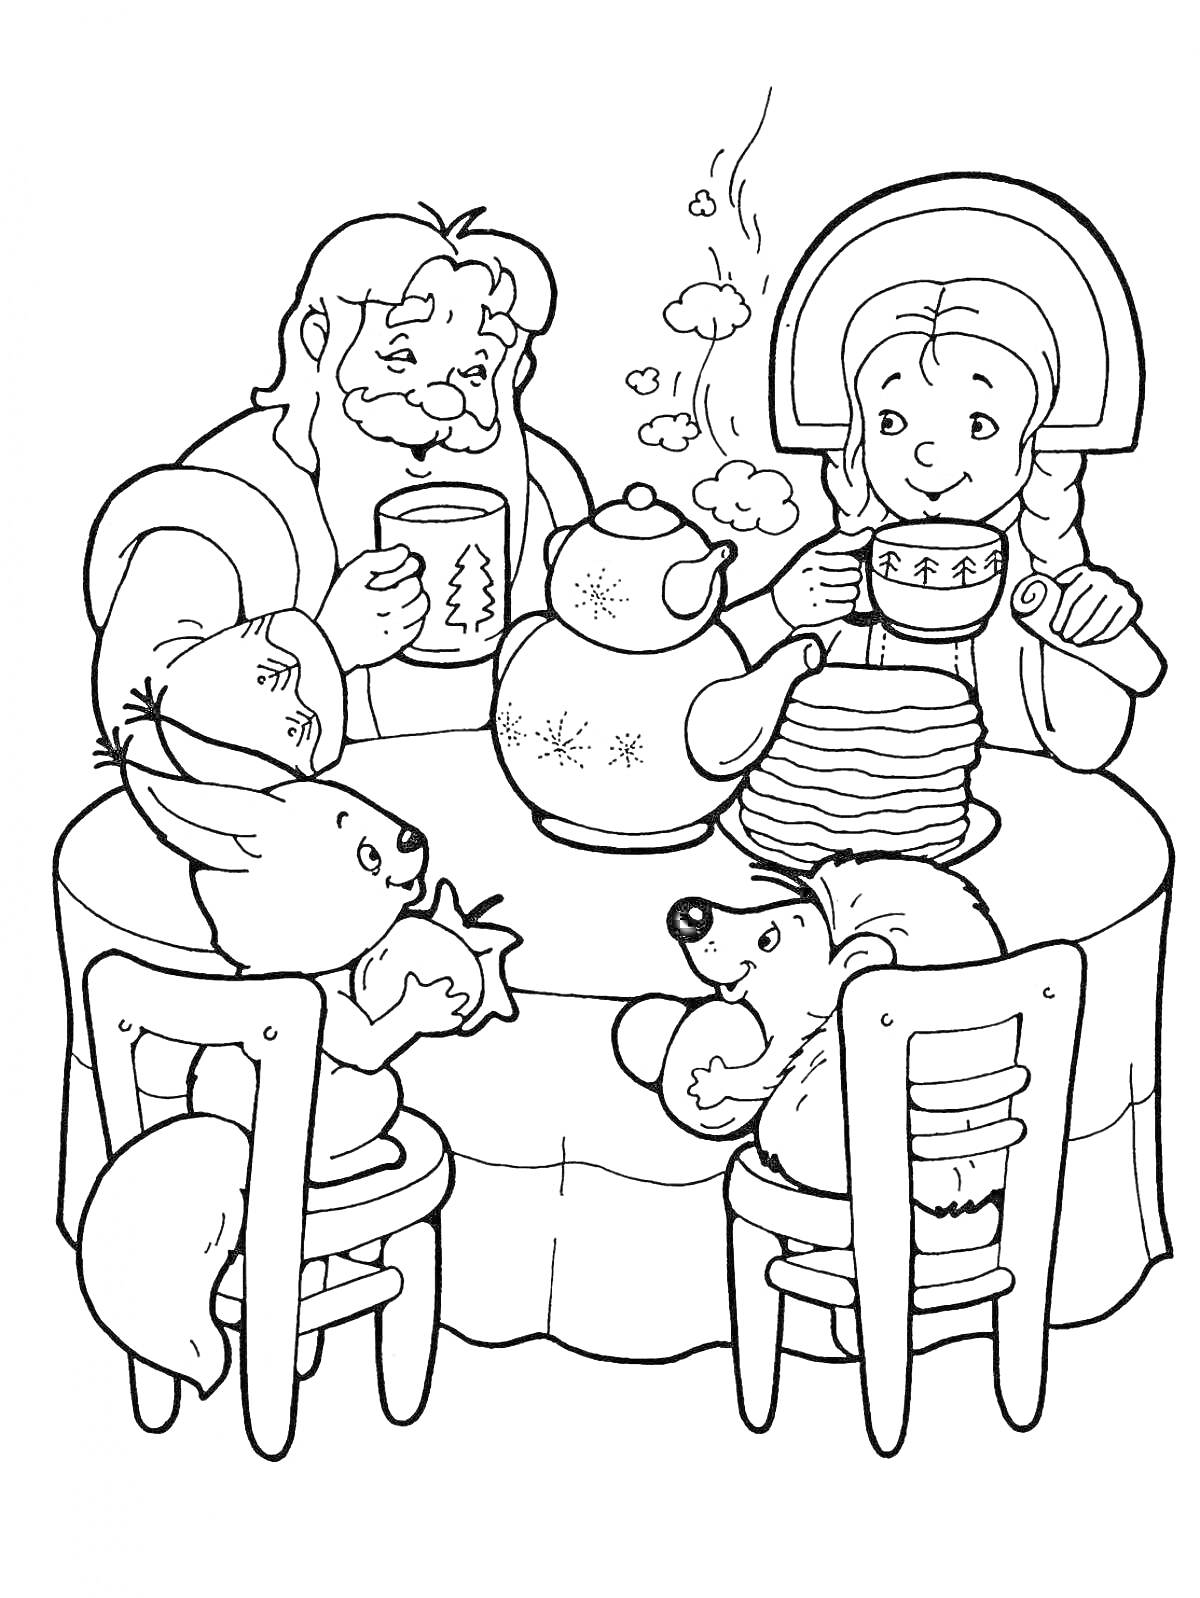 Дед Мороз и Снегурочка за столом с животными, пьют чай